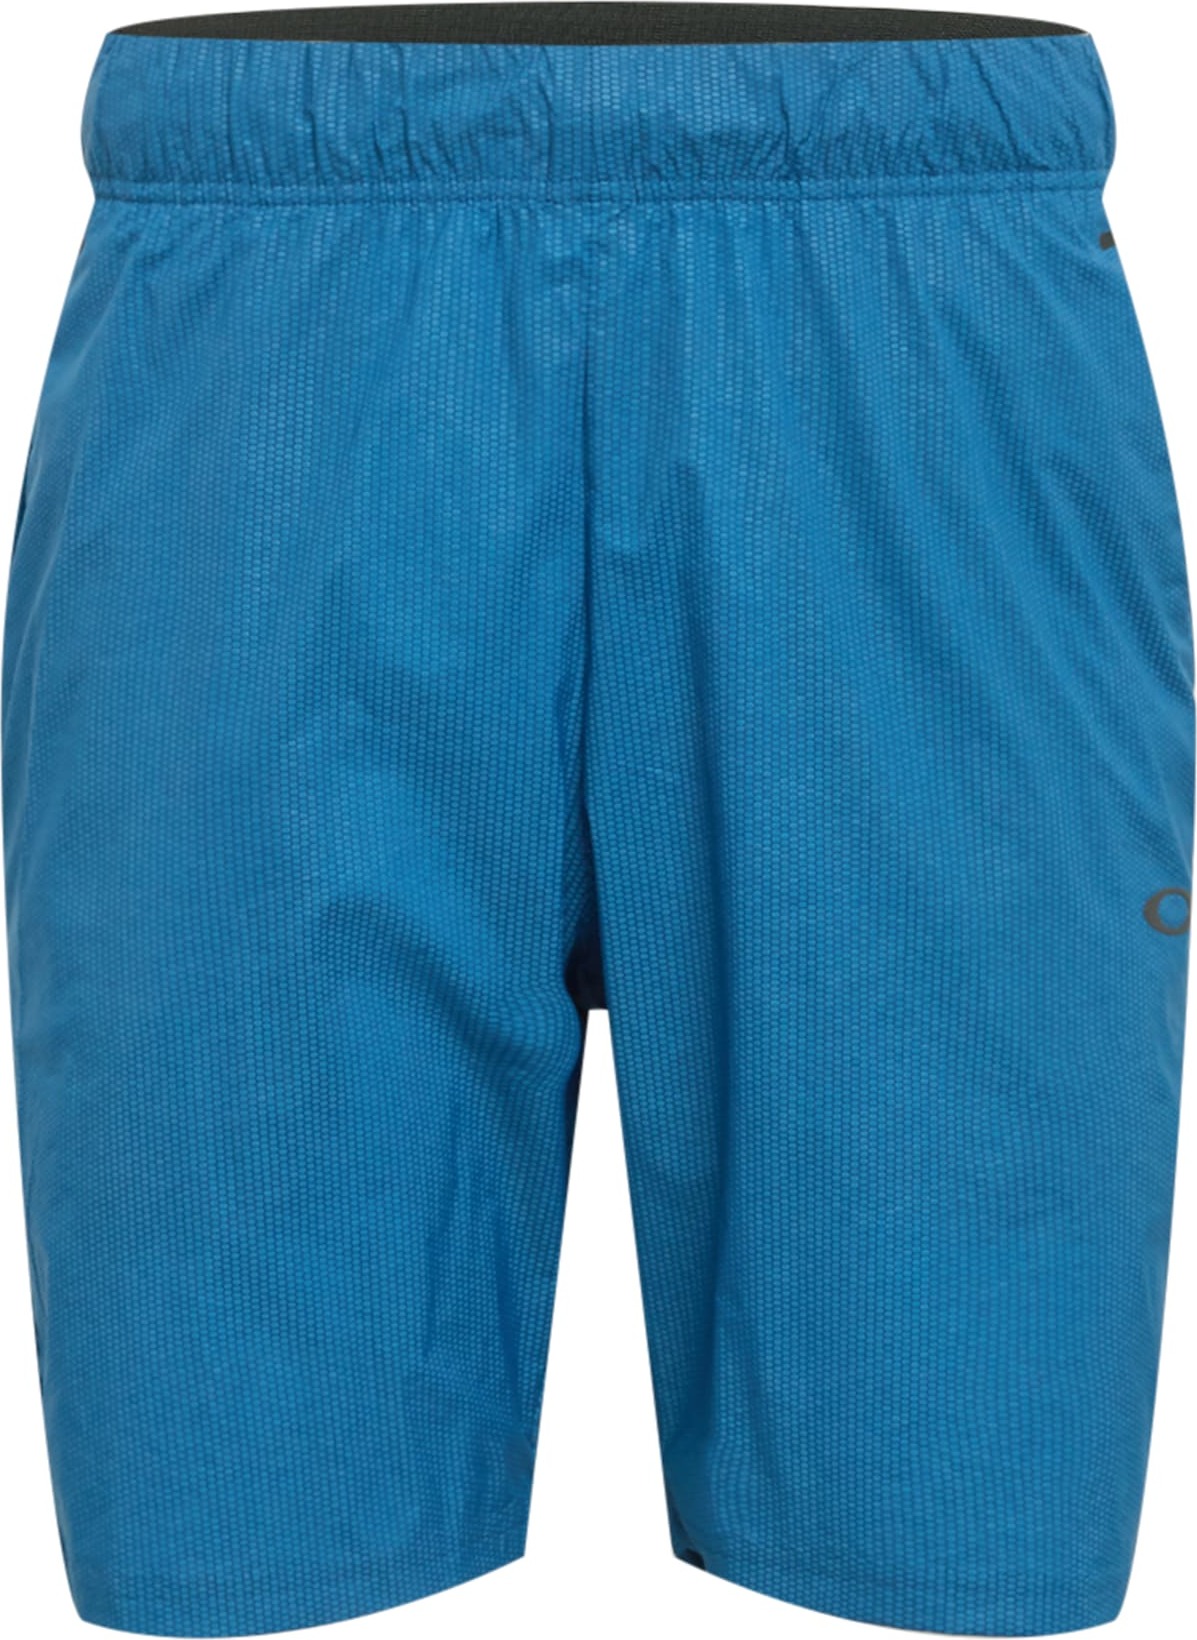 Sportovní kalhoty Oakley nebeská modř